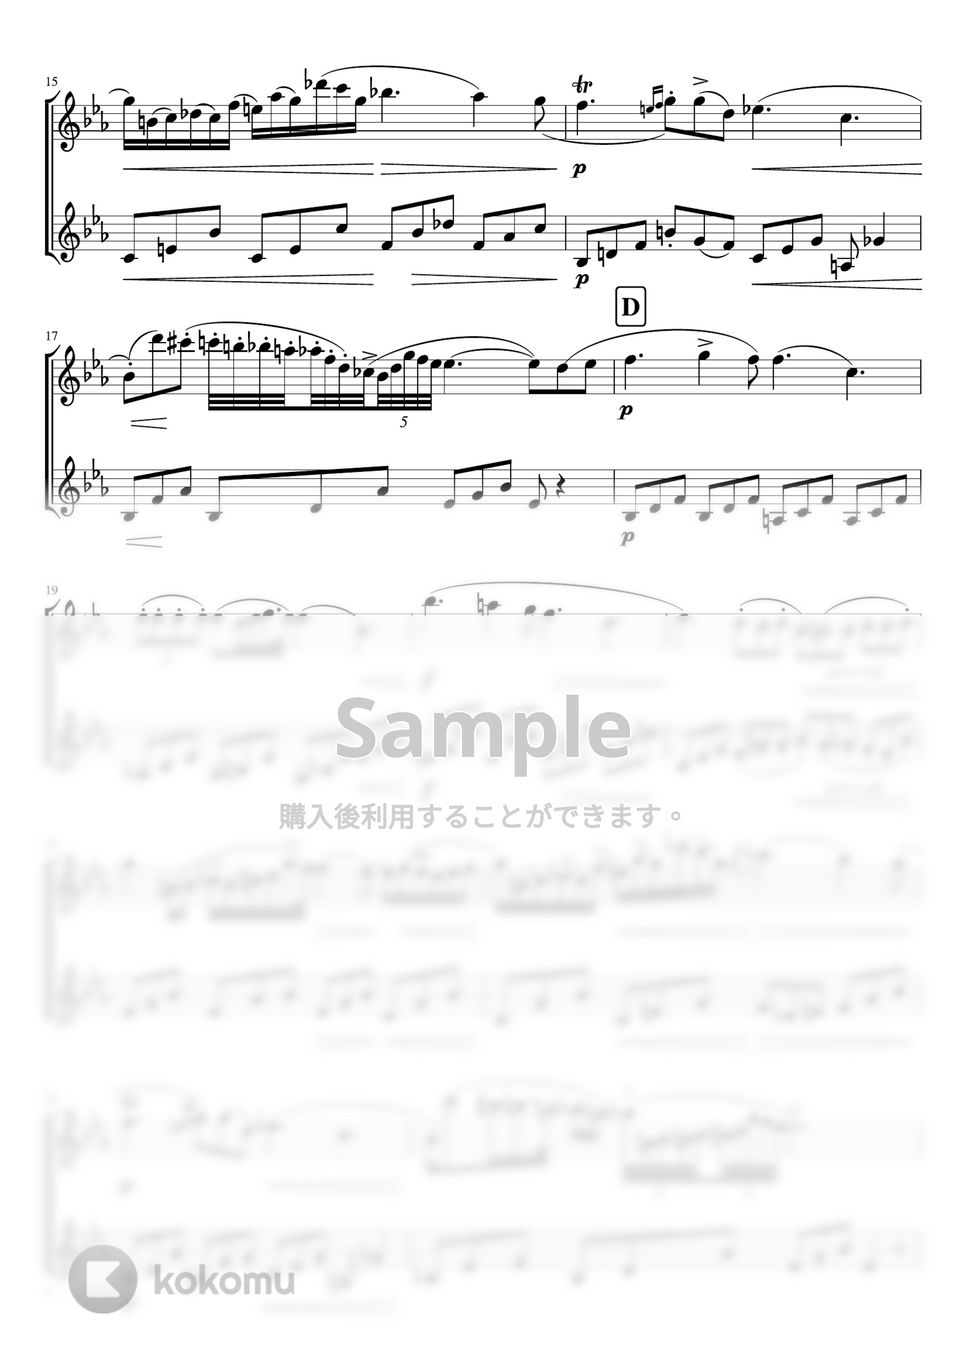 ショパン - ノクターン第2番 (E♭・フルートバイオリン二重奏/無伴奏) by pfkaori